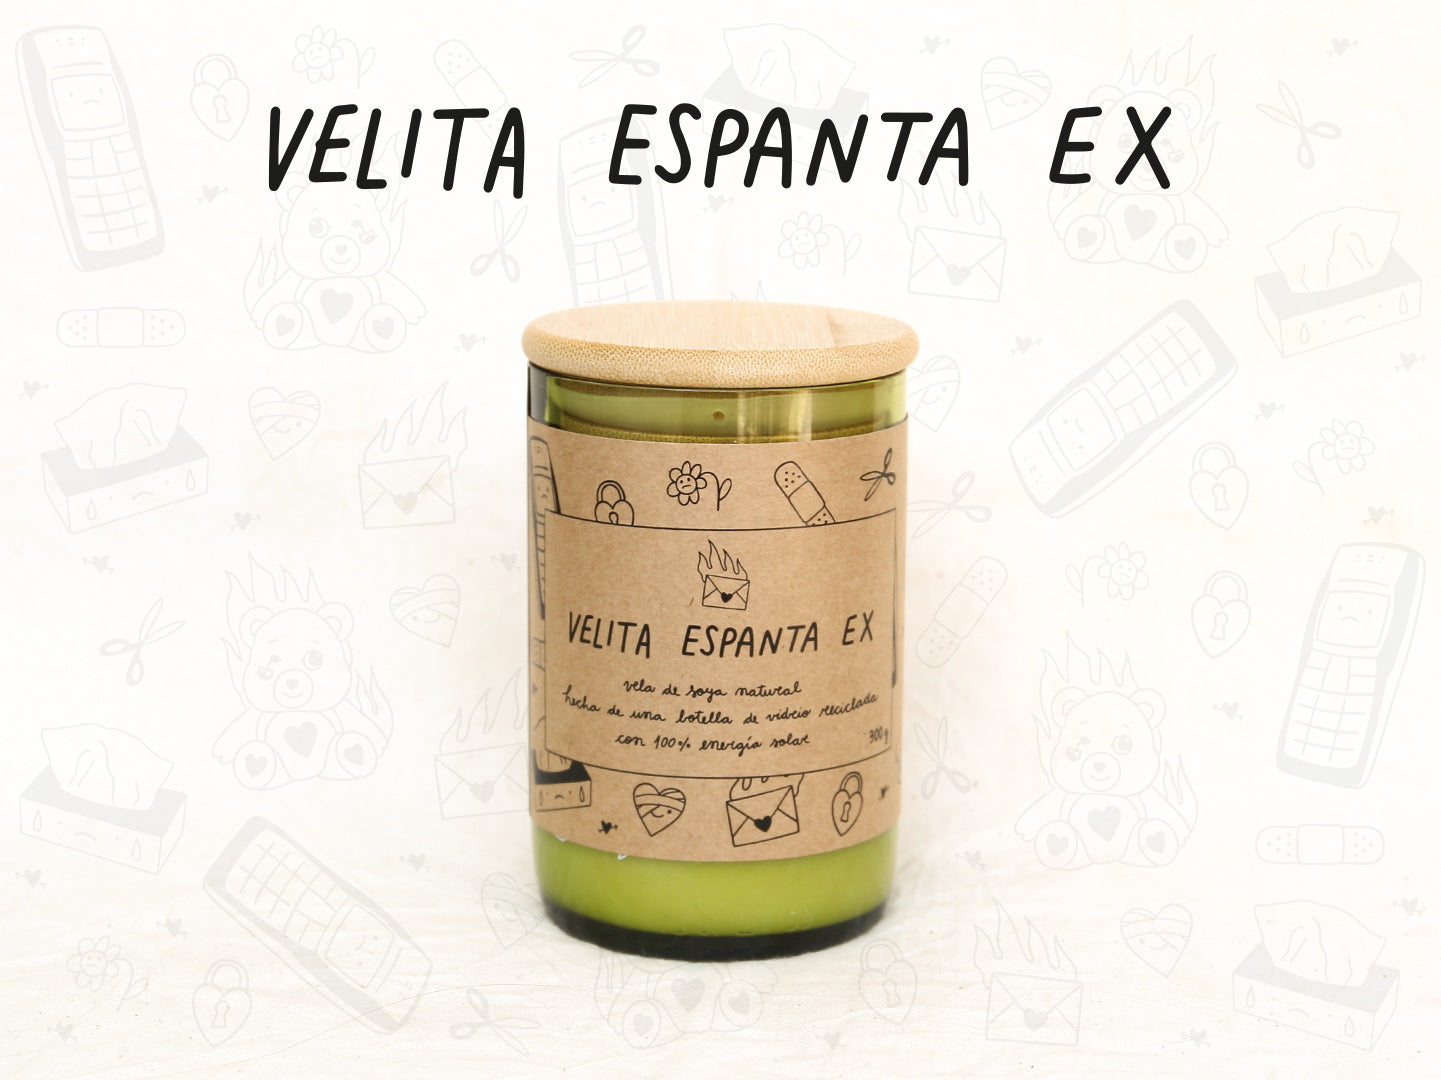 Velita Espanta Ex - Aroma Vainilla - Verde